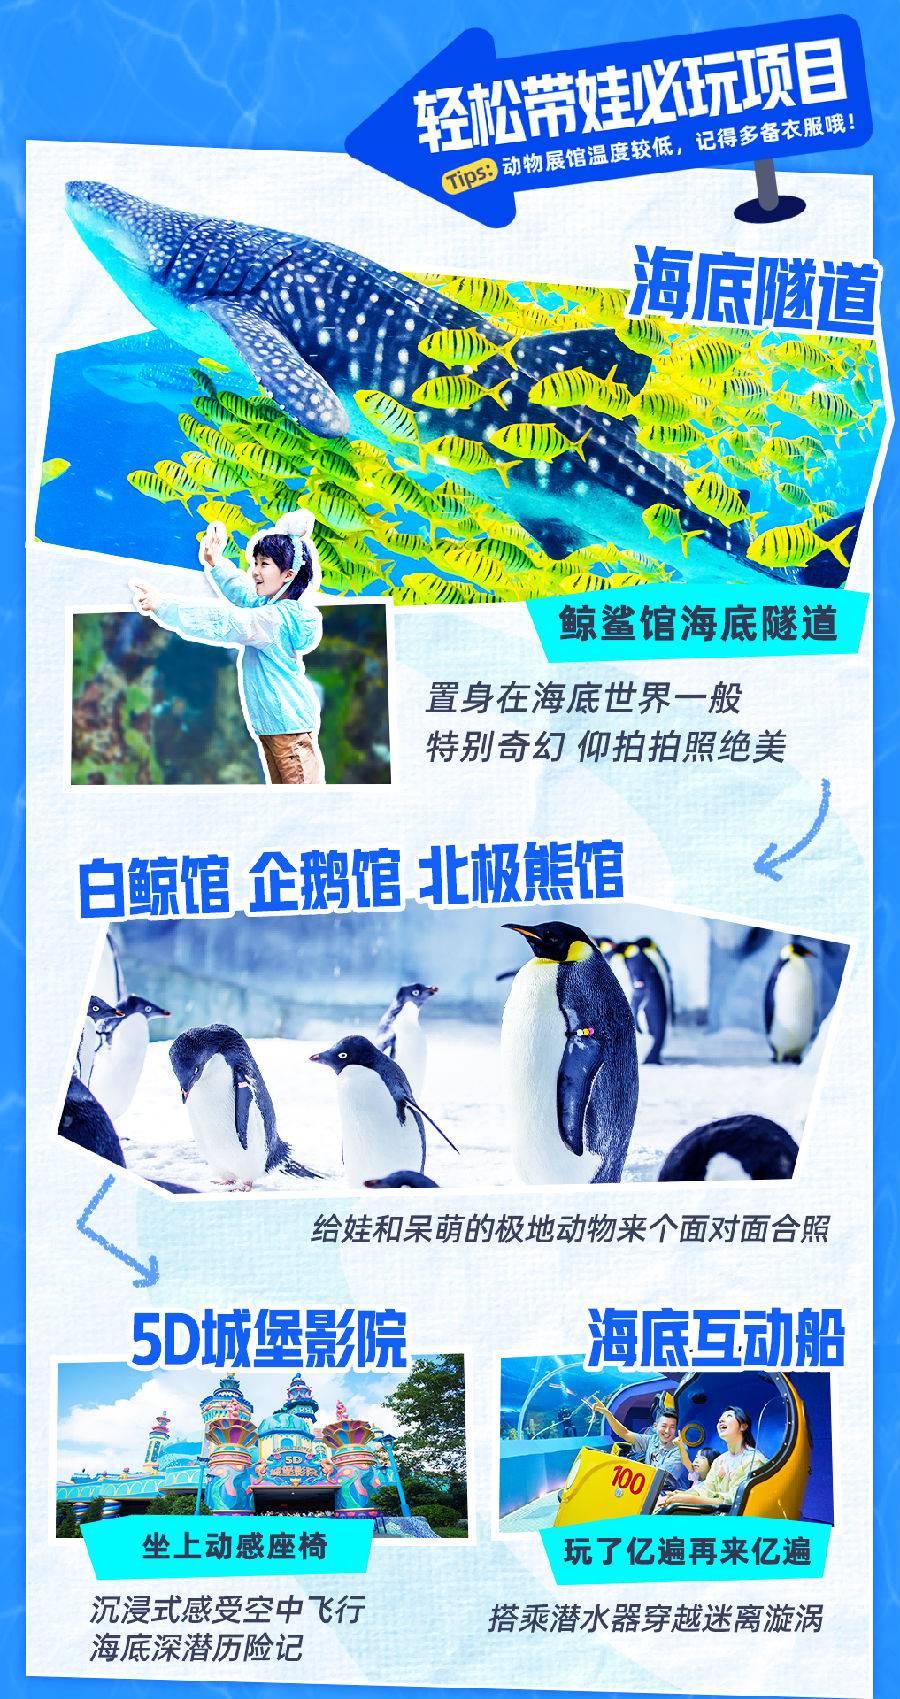 【周年庆】珠海长隆海洋王国家庭票（2大1小）限时限量